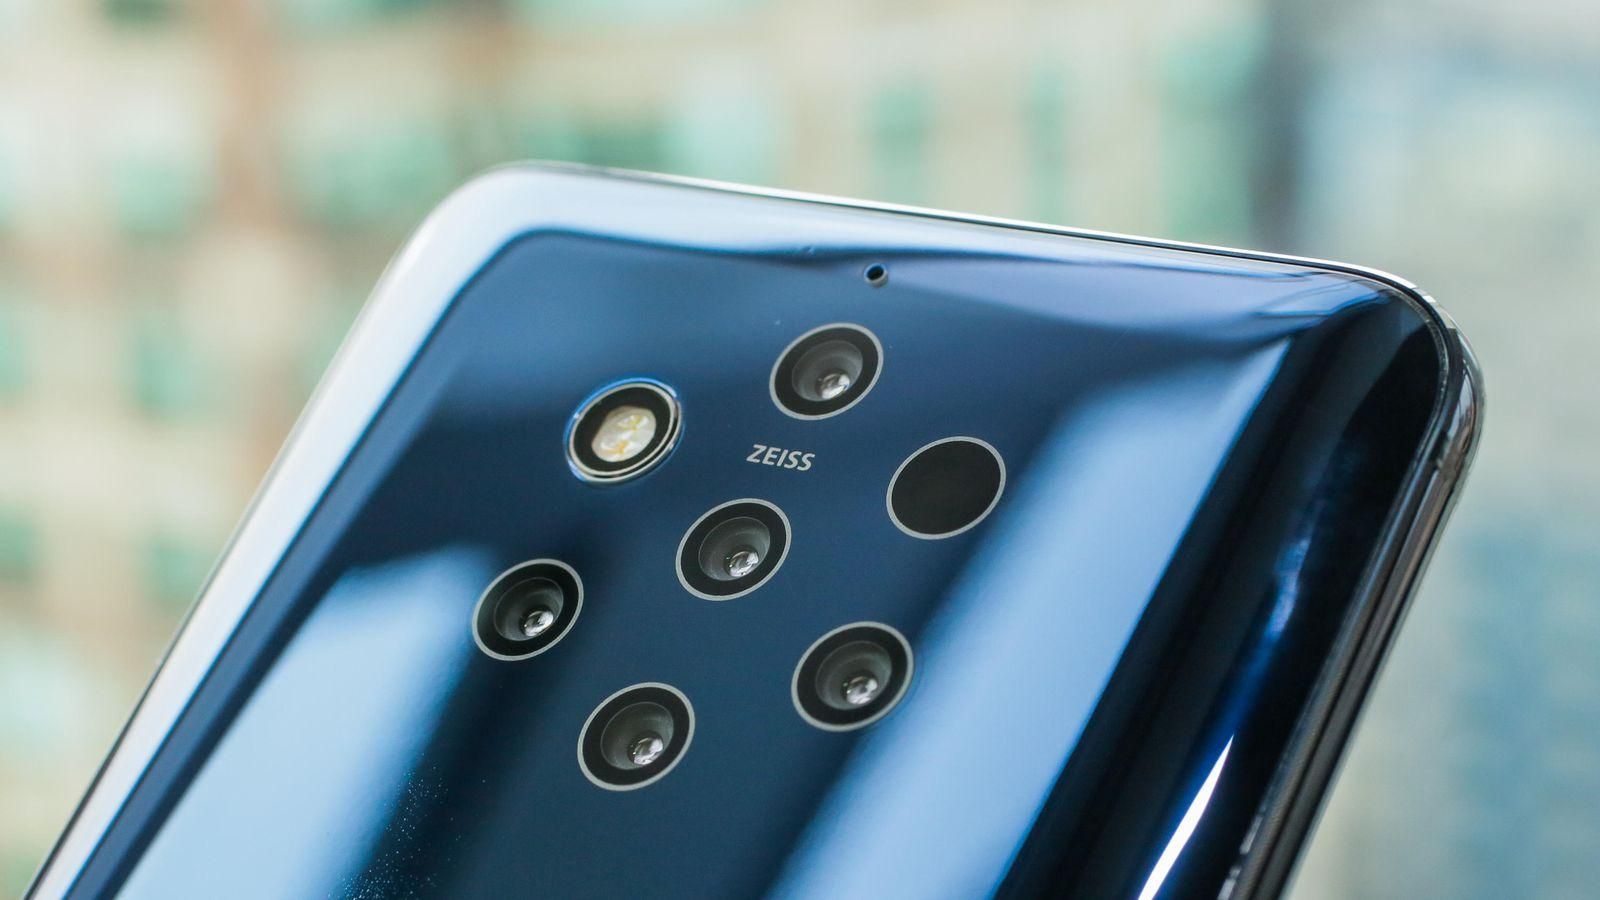 Как снимает первый в мире смартфон с 5 основными камерами Nokia 9 PureView: невероятные фото